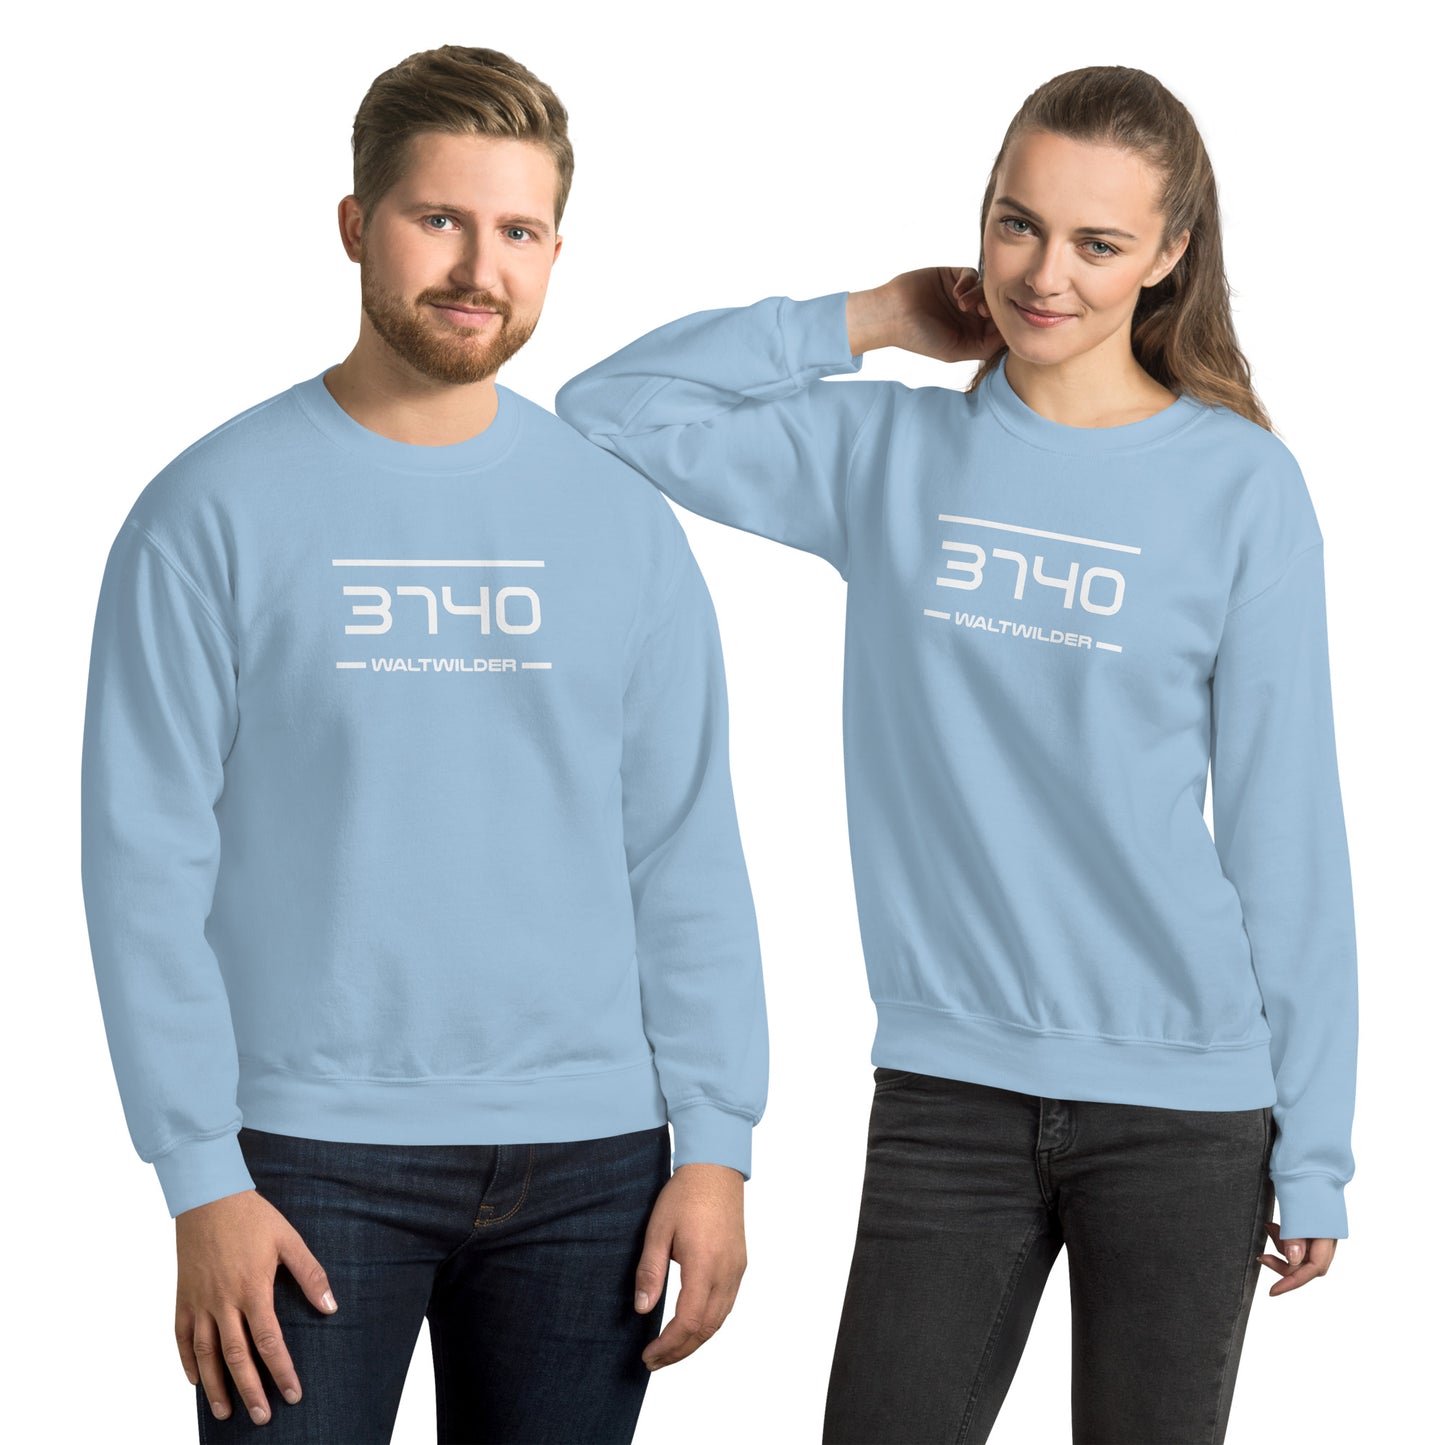 Sweater - 3740 - Waltwilder (M/V)